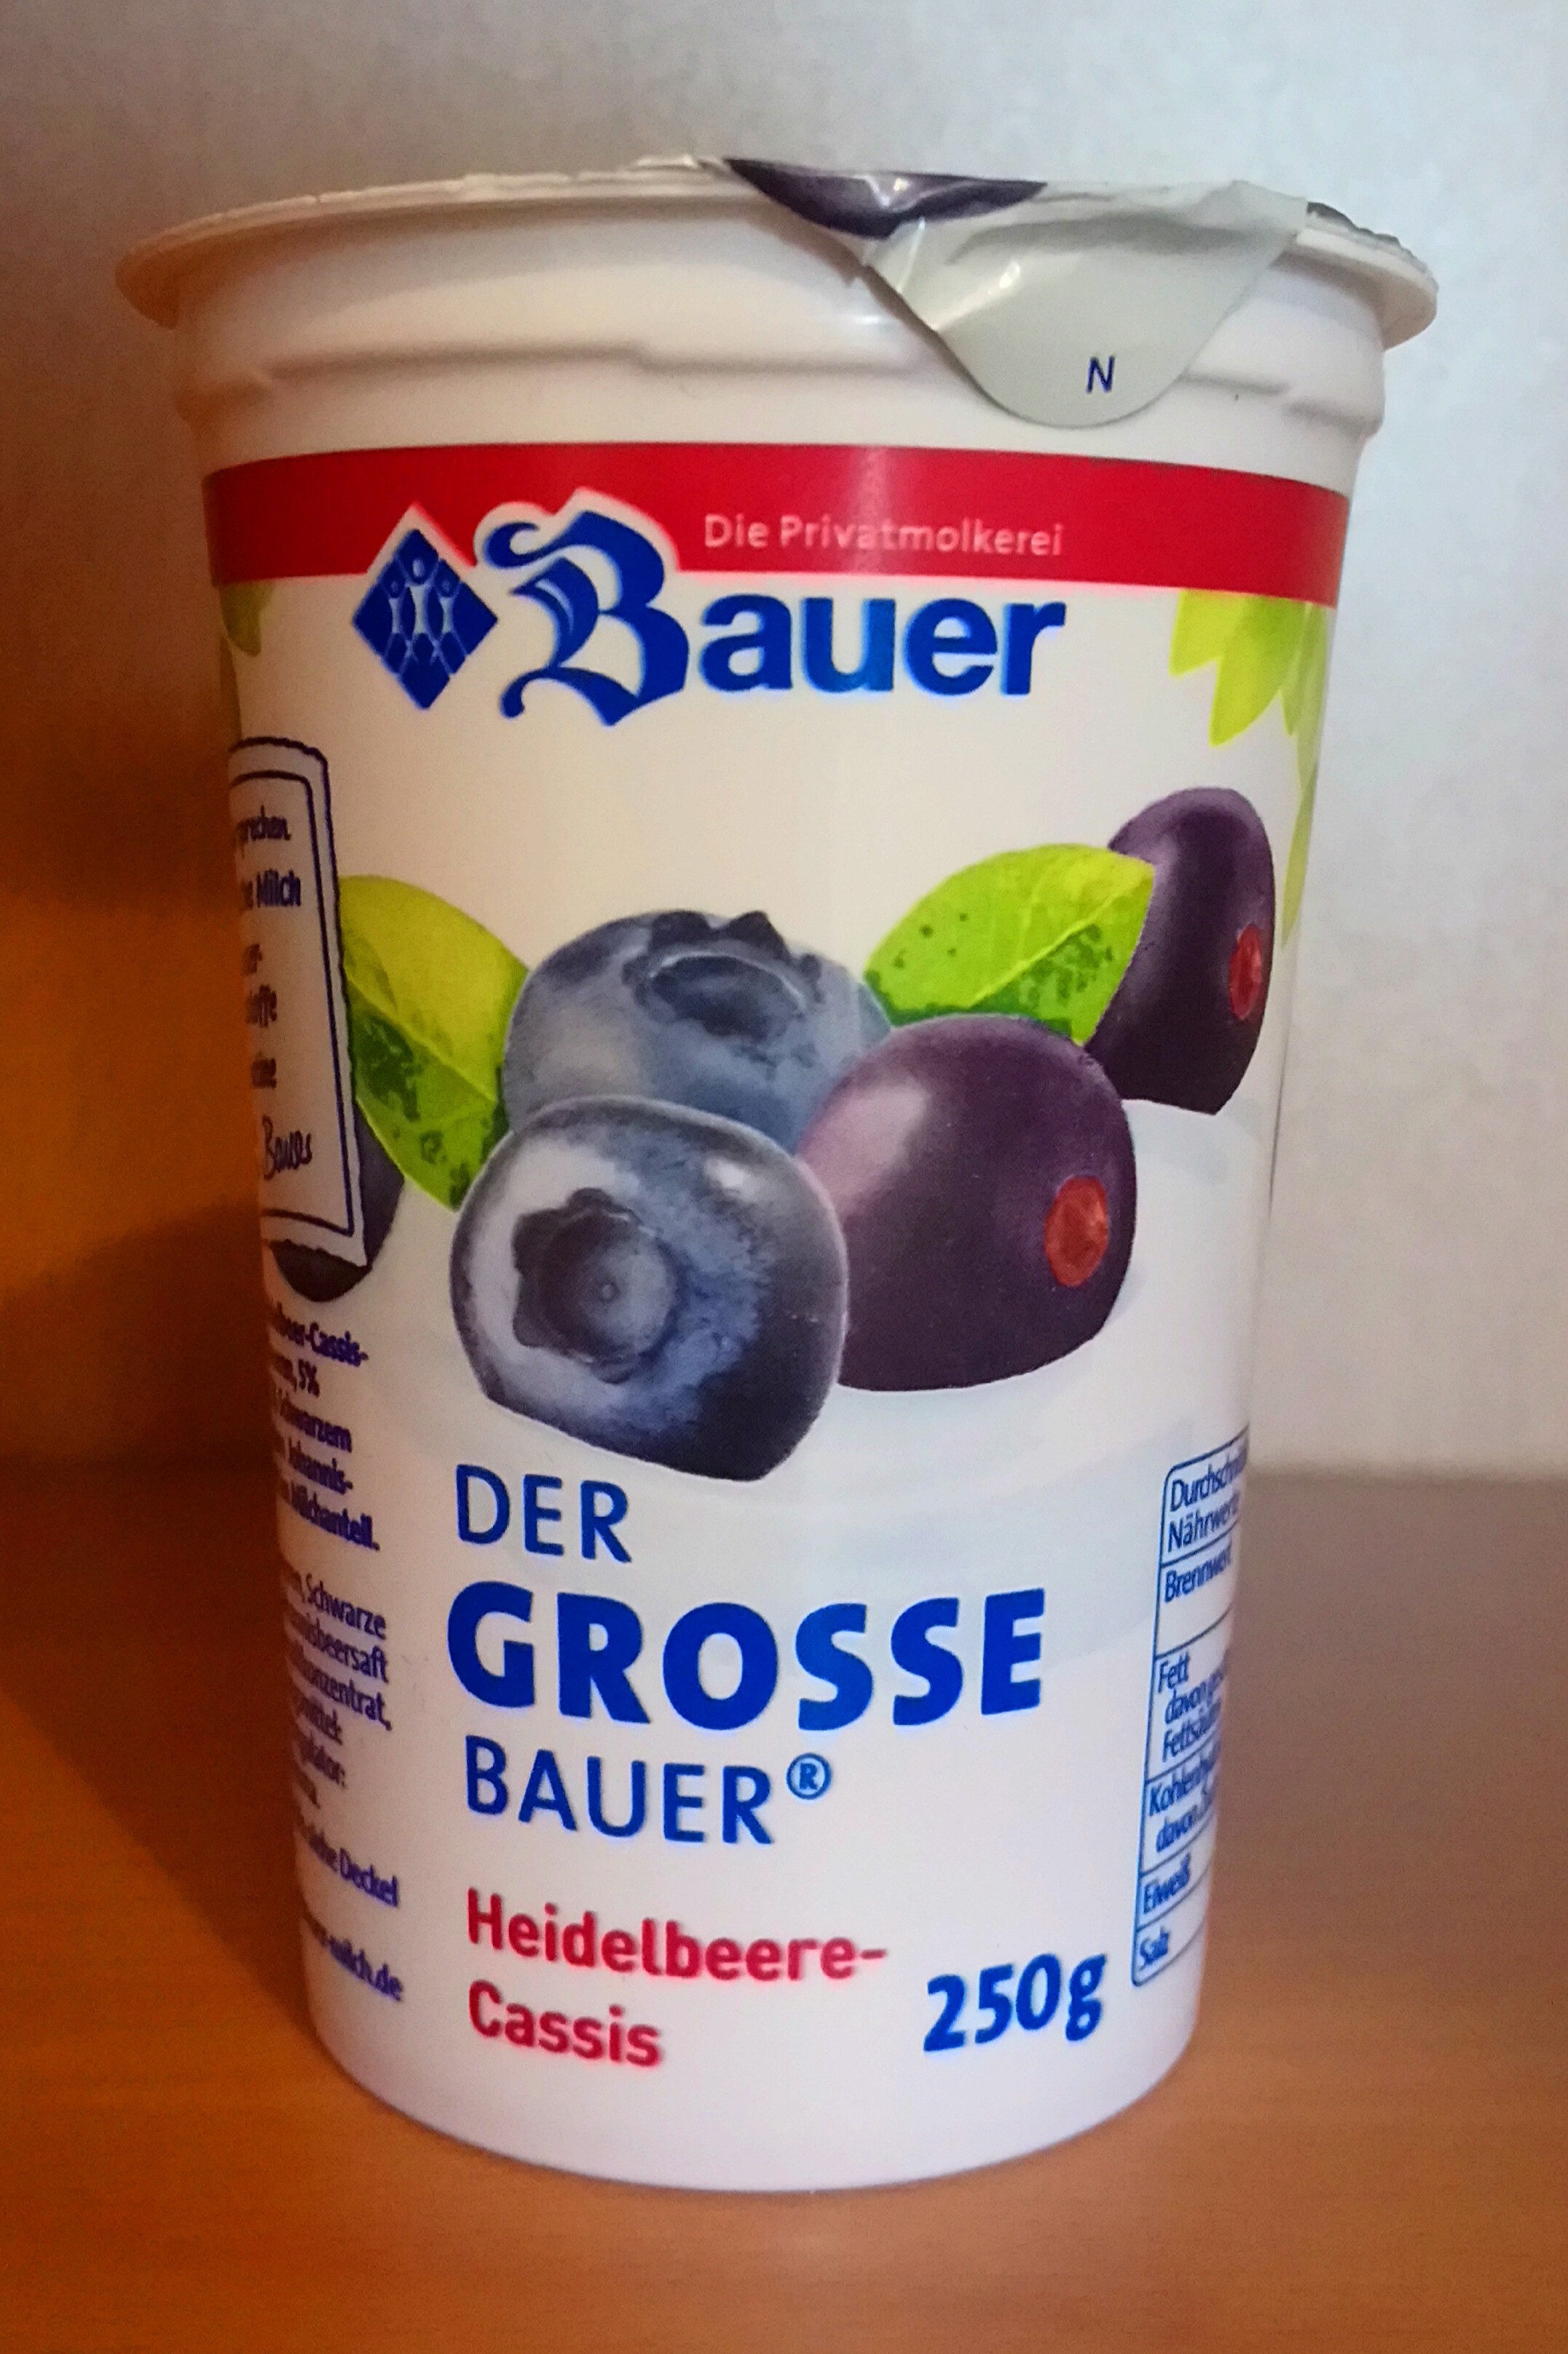 Der Große Bauer - Heidelbeer-Cassis - Product